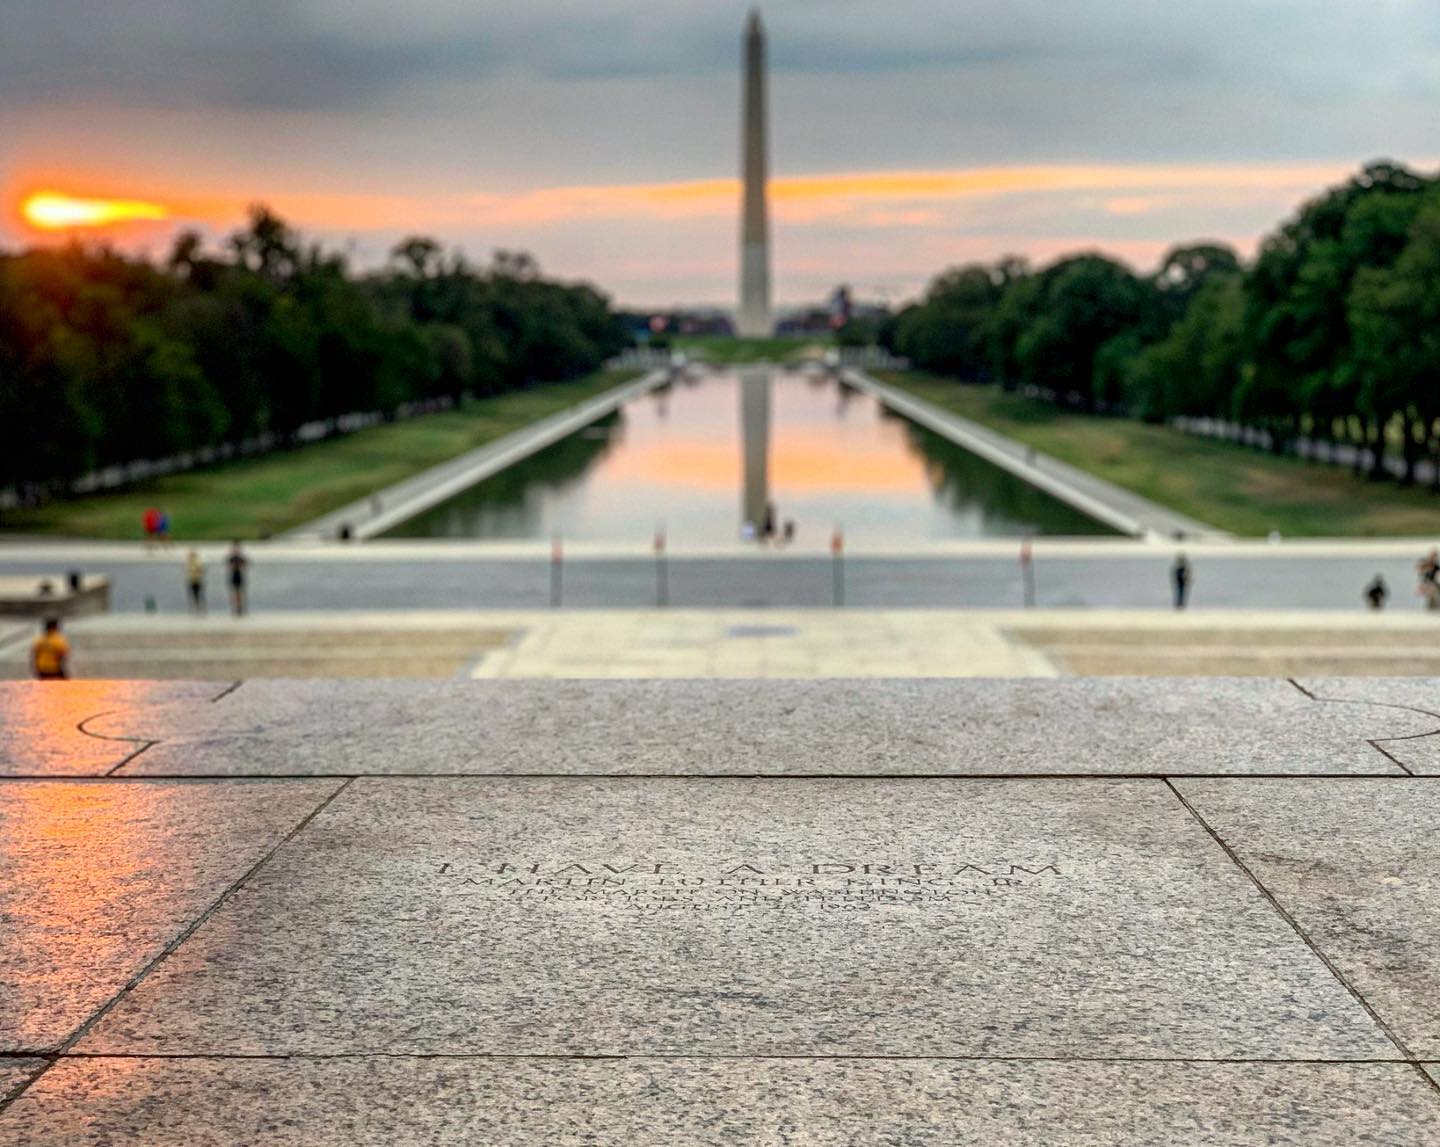 @ jennymagee79 - Lincoln Memorial Passos 'Eu tenho um sonho'